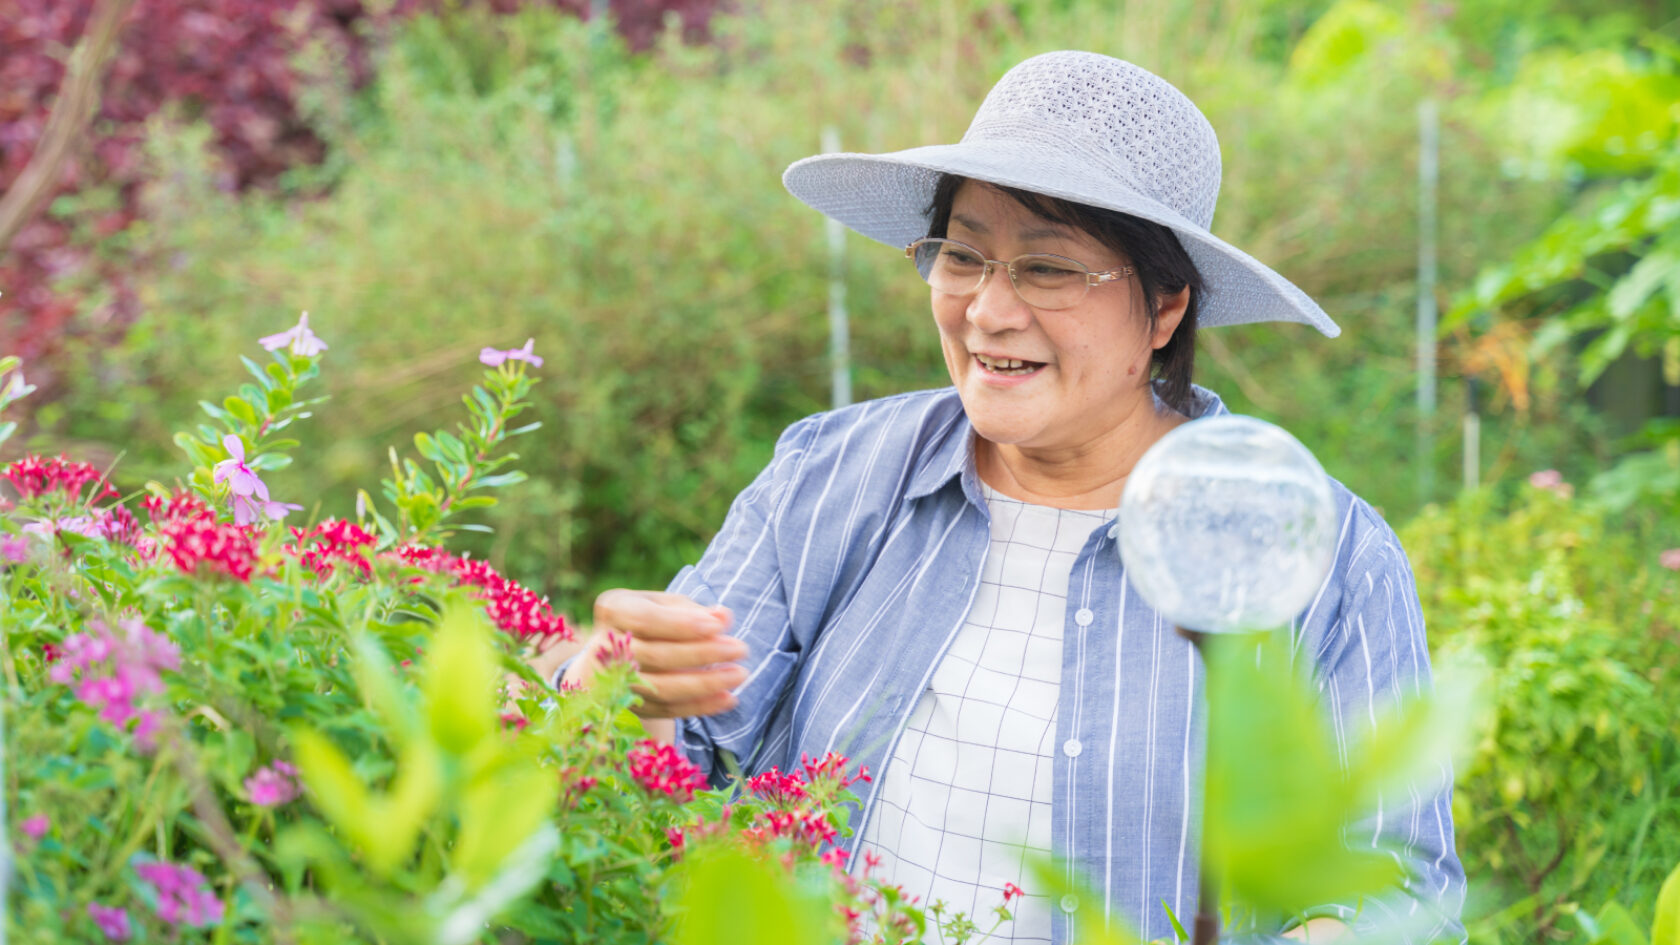 Una mujer cuida su jardín y usa un sombrero de ala ancha.